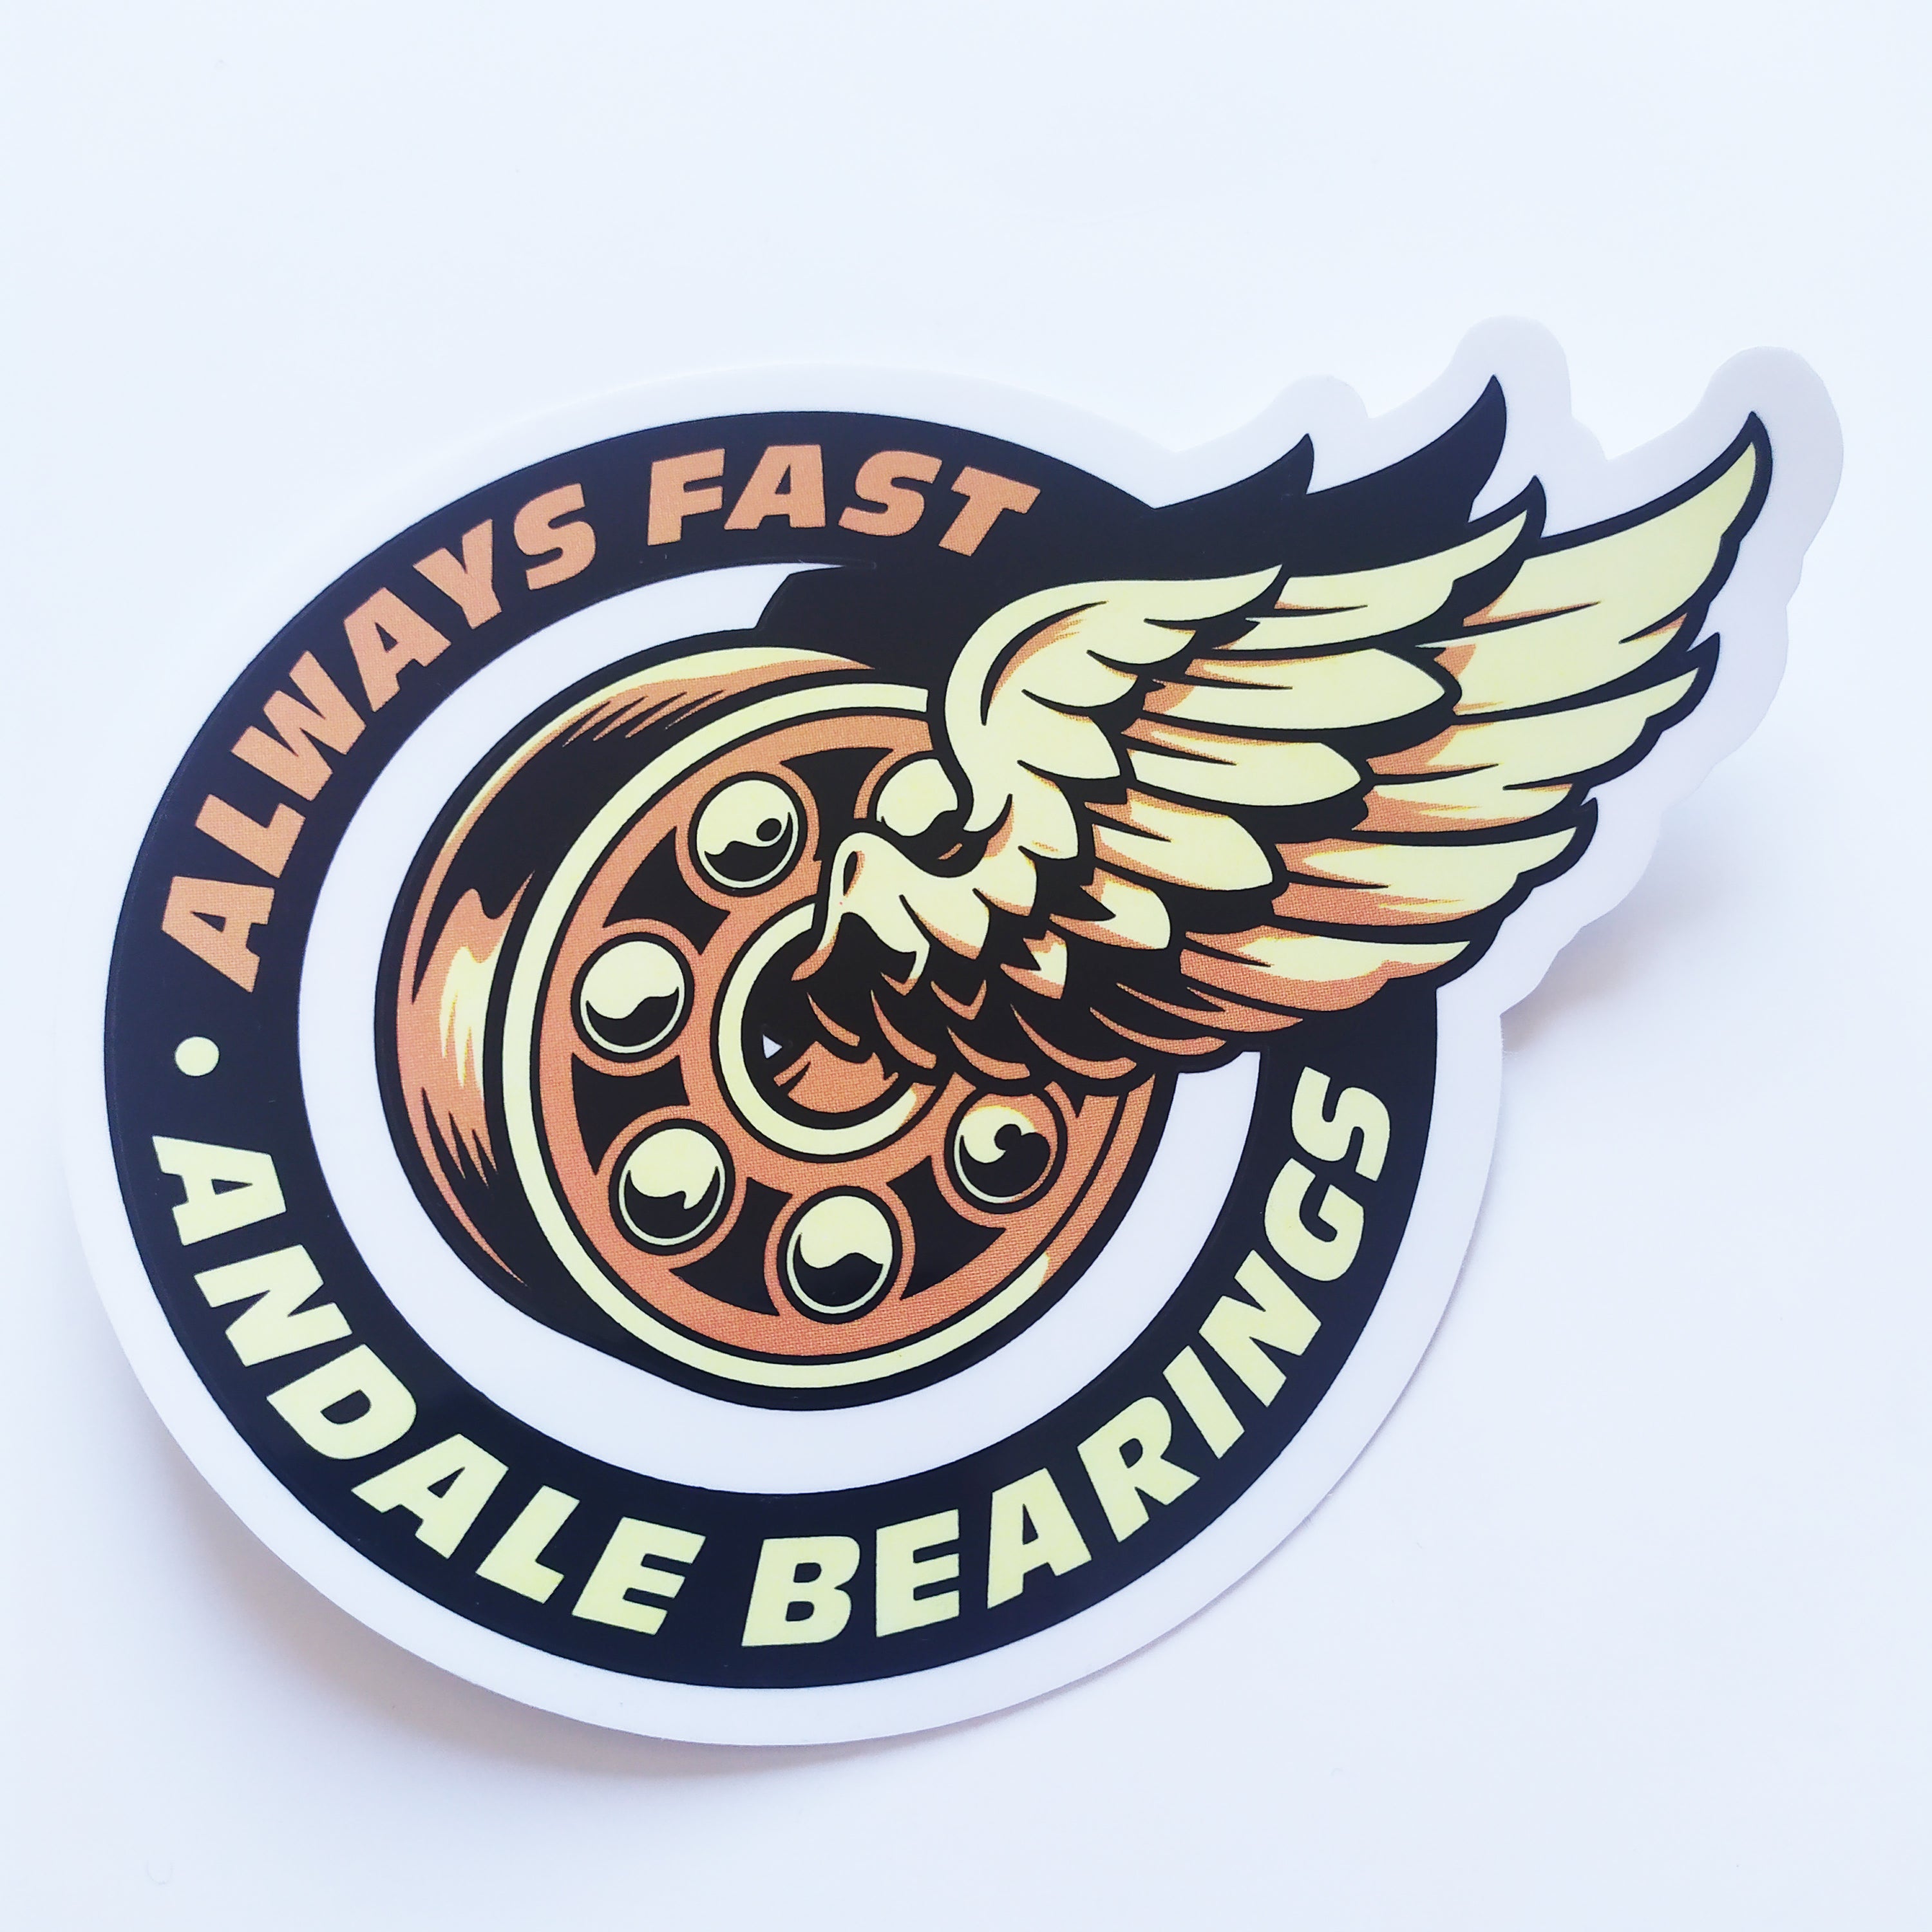 Andale Bearings Skateboard Sticker - "Always Fast Wings" - 11cm across approx - SkateboardStickers.com